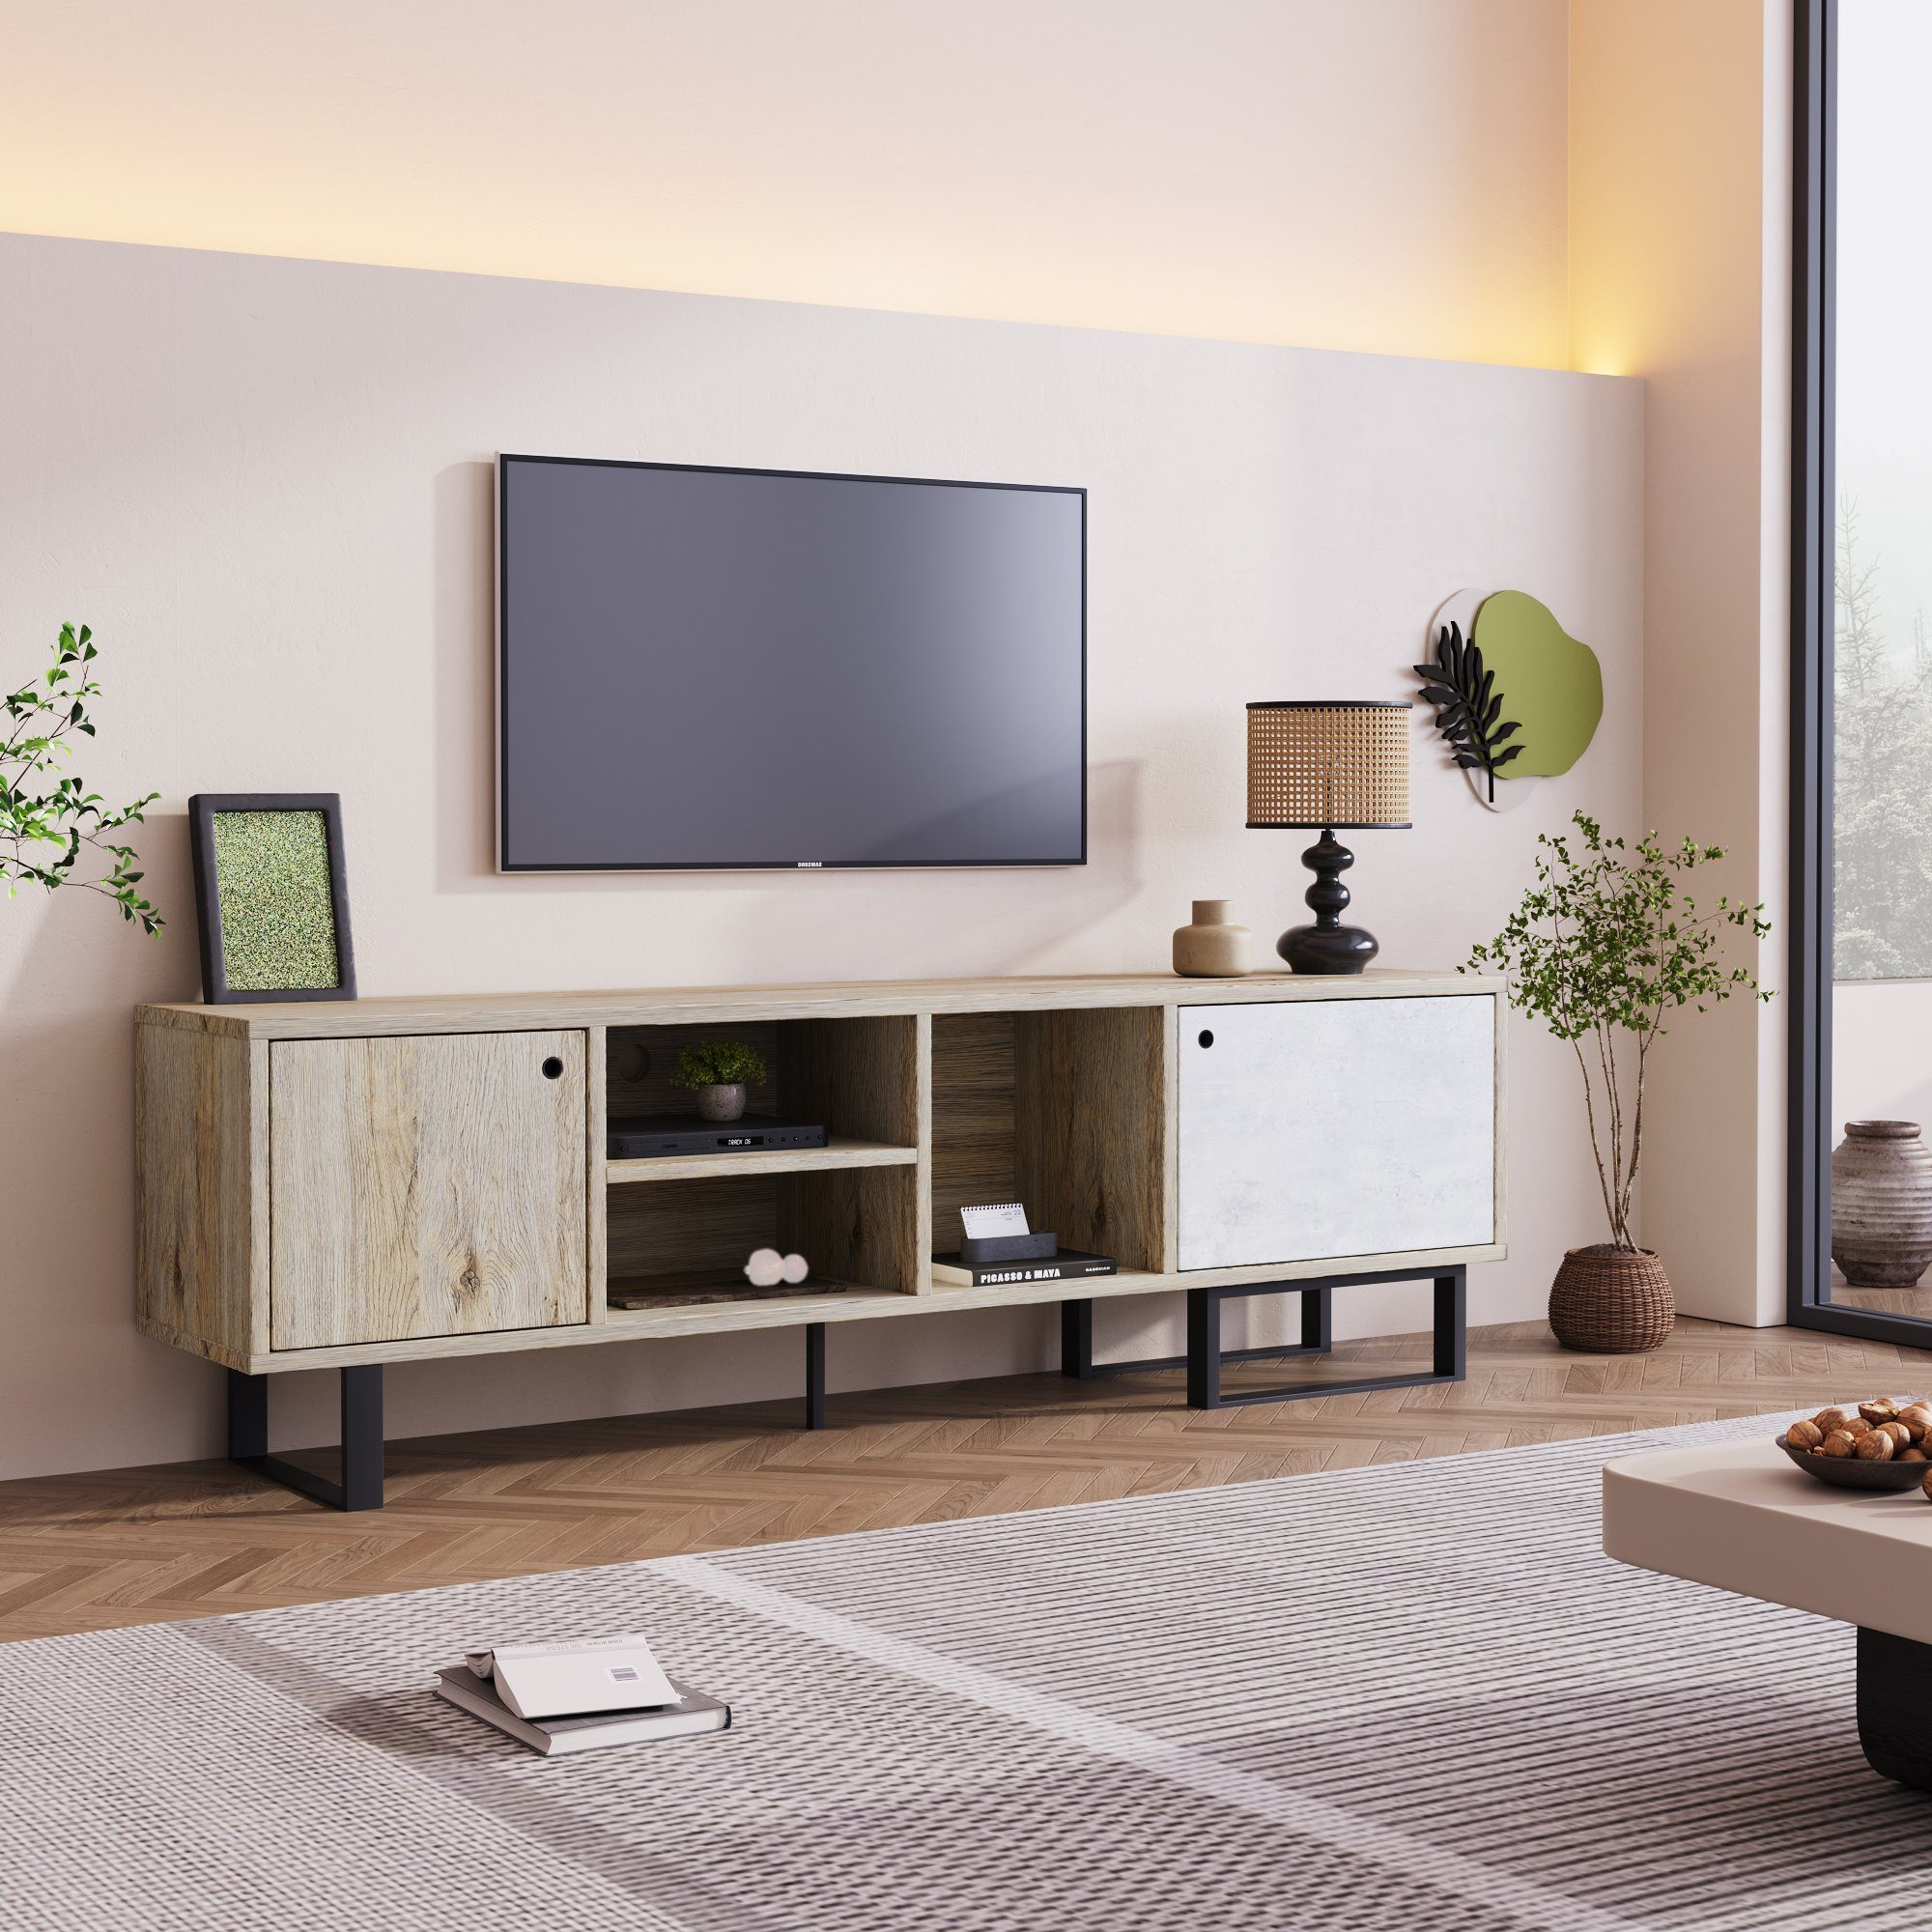 Fangqi TV-Schrank mit 2 Türen, zwei Fächern, einem offenen Fach, 160Lx40Bx51.5H Holzlattentür, Eine Kombination aus Vintage-Holz und Grau.